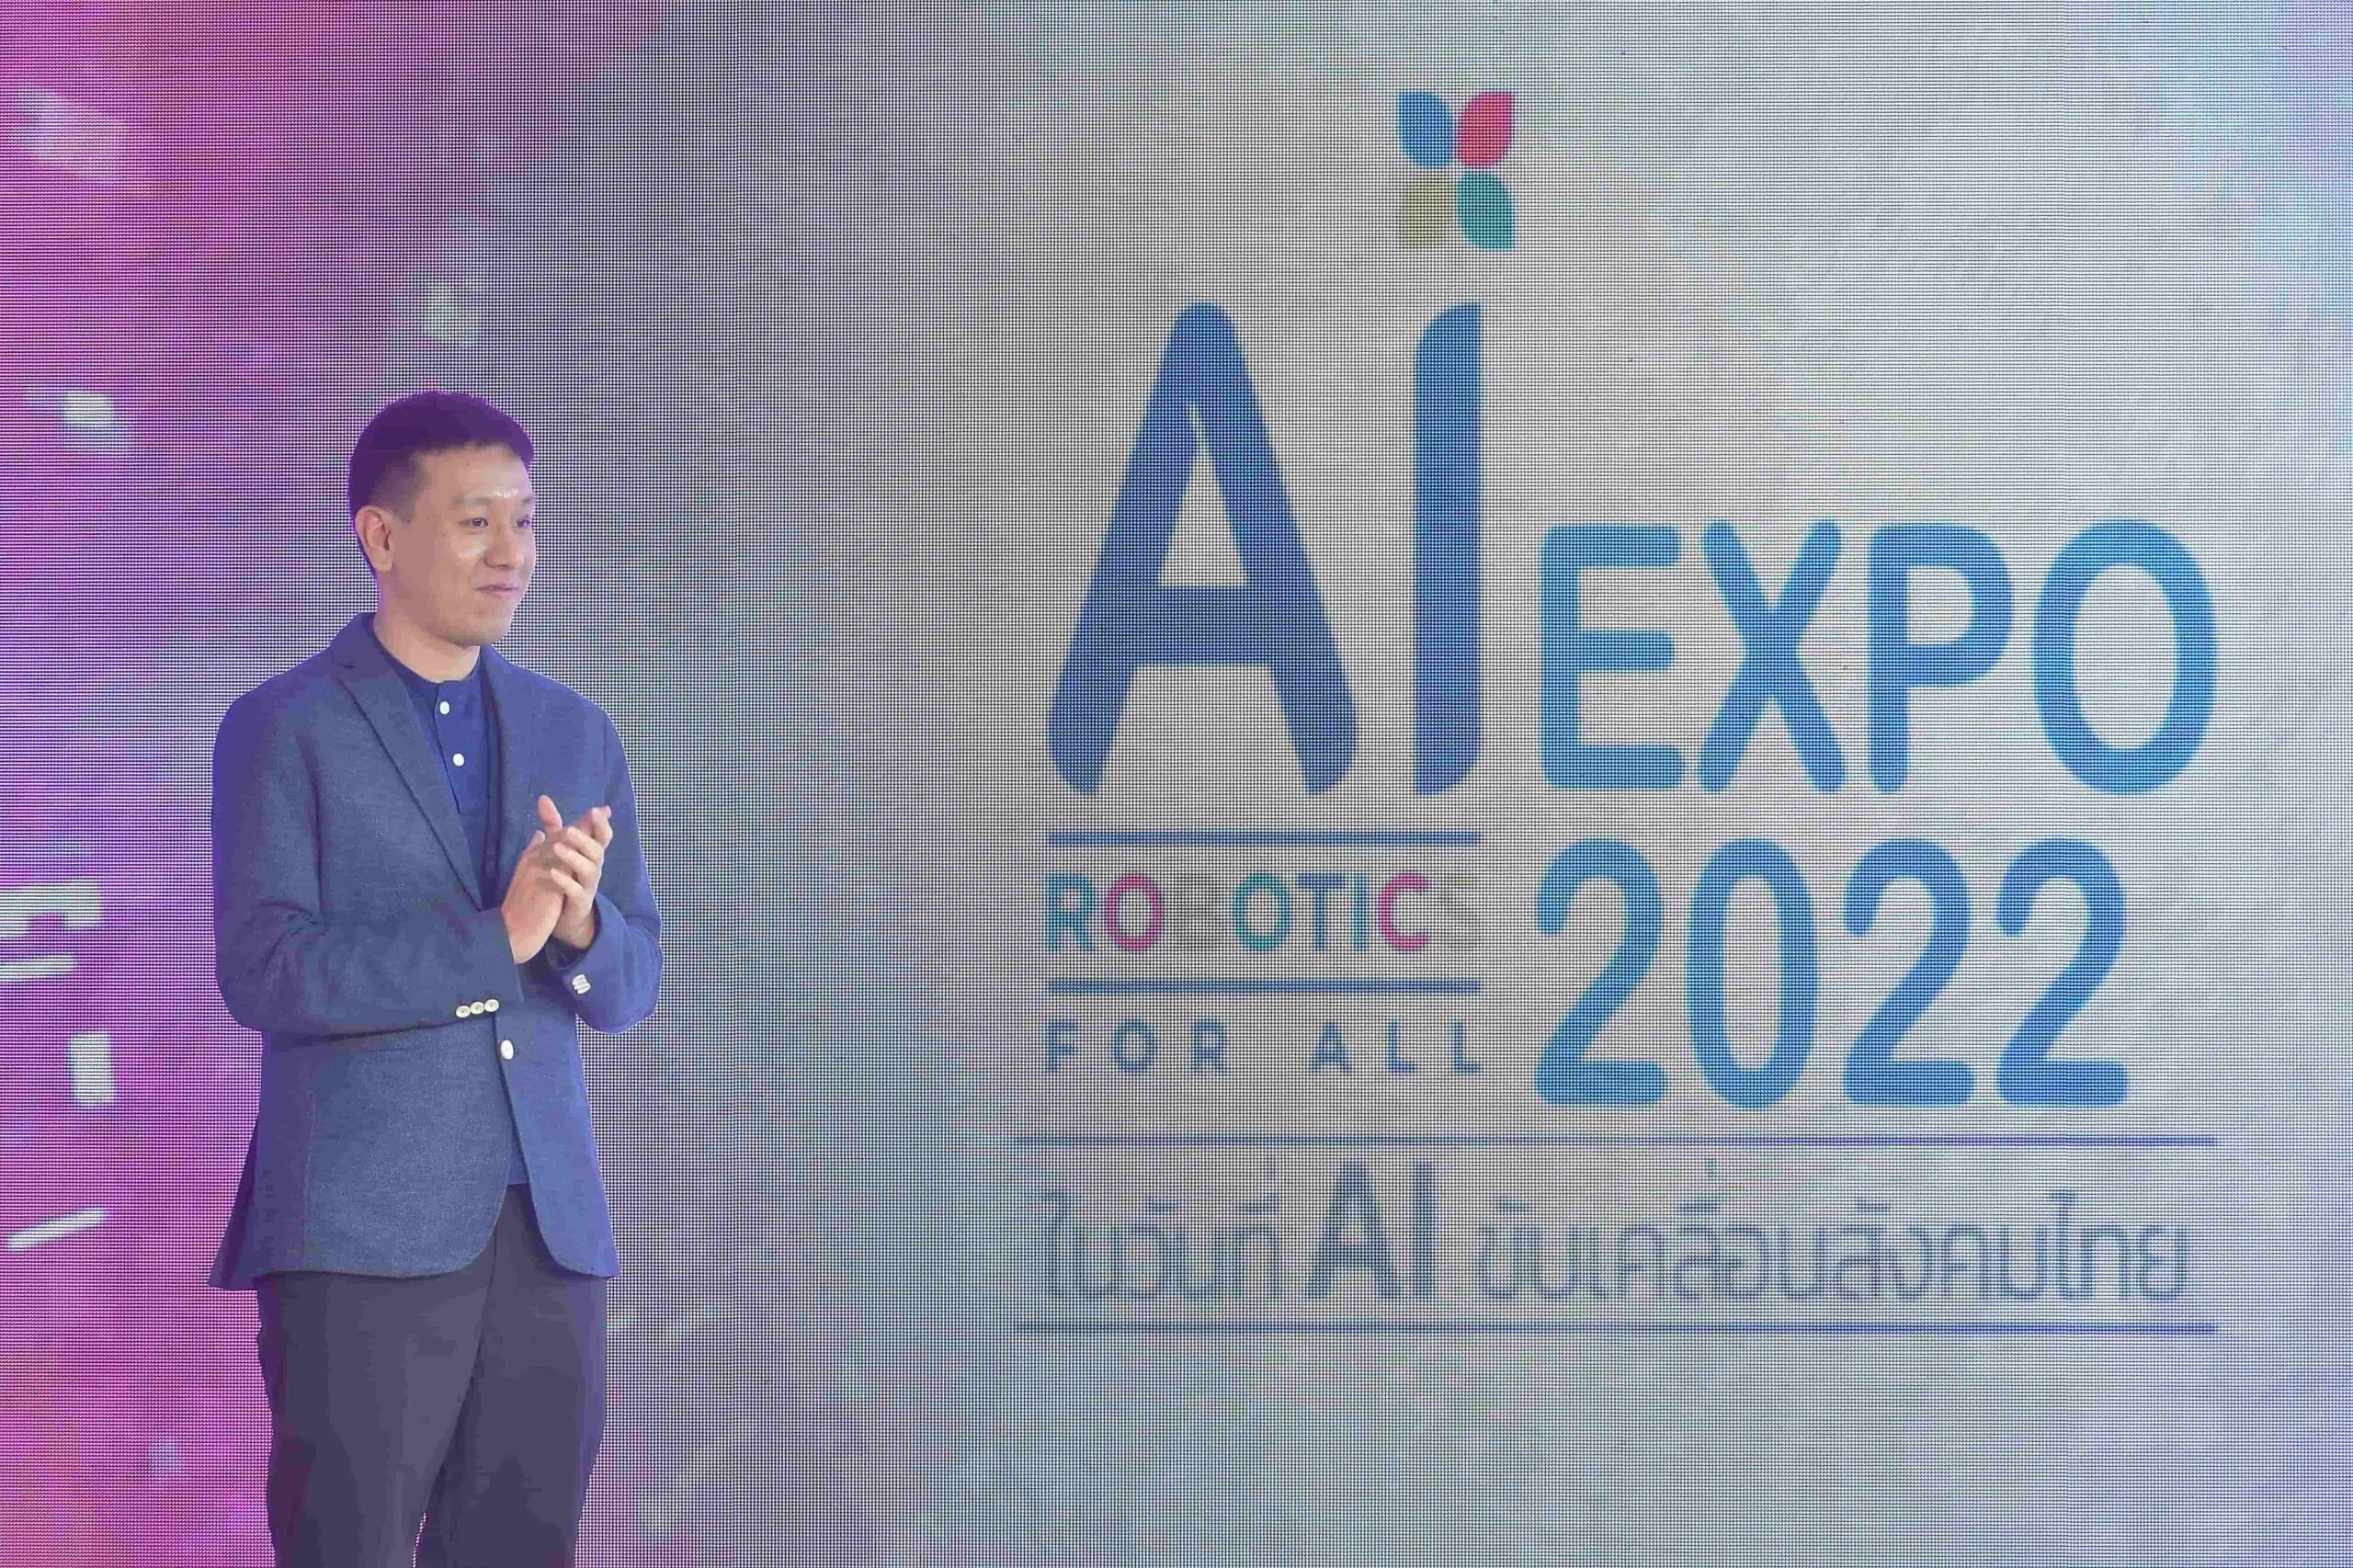 เปิดงาน AI Robotics for All Expo 2022 "ในวันที่ AI ขับเคลื่อนสังคมไทย" โชว์ความก้าวหน้า นำเสนอผลงานการพัฒนาโครงการปัญญาประดิษฐ์ฝีมือคนไทย